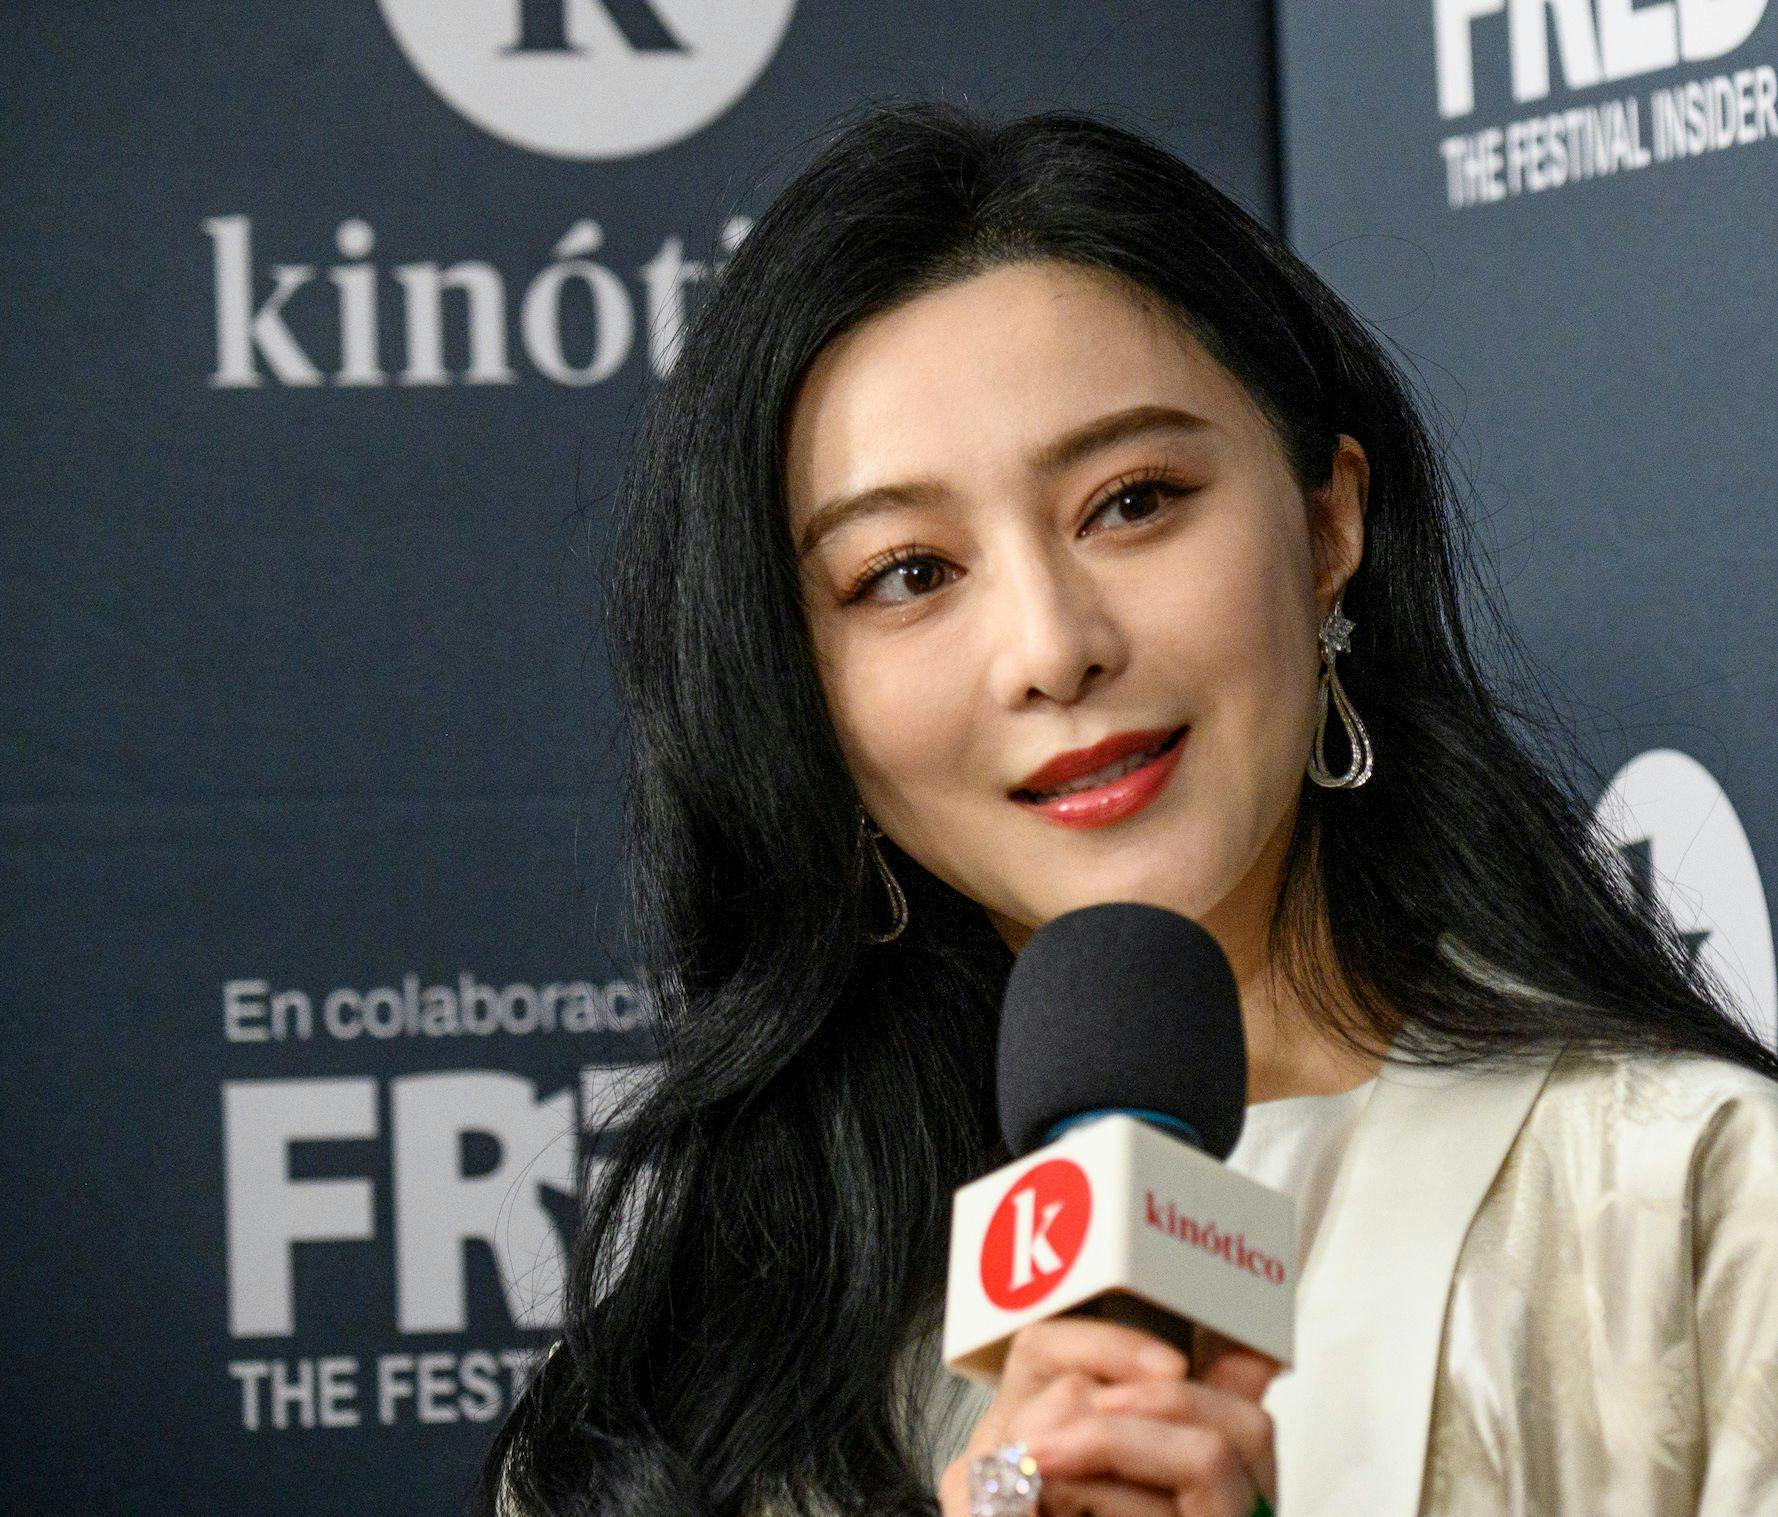 La actriz china Fan Bing-bing, durante su entrevista con Kinótico en el Festival de San Sebastián